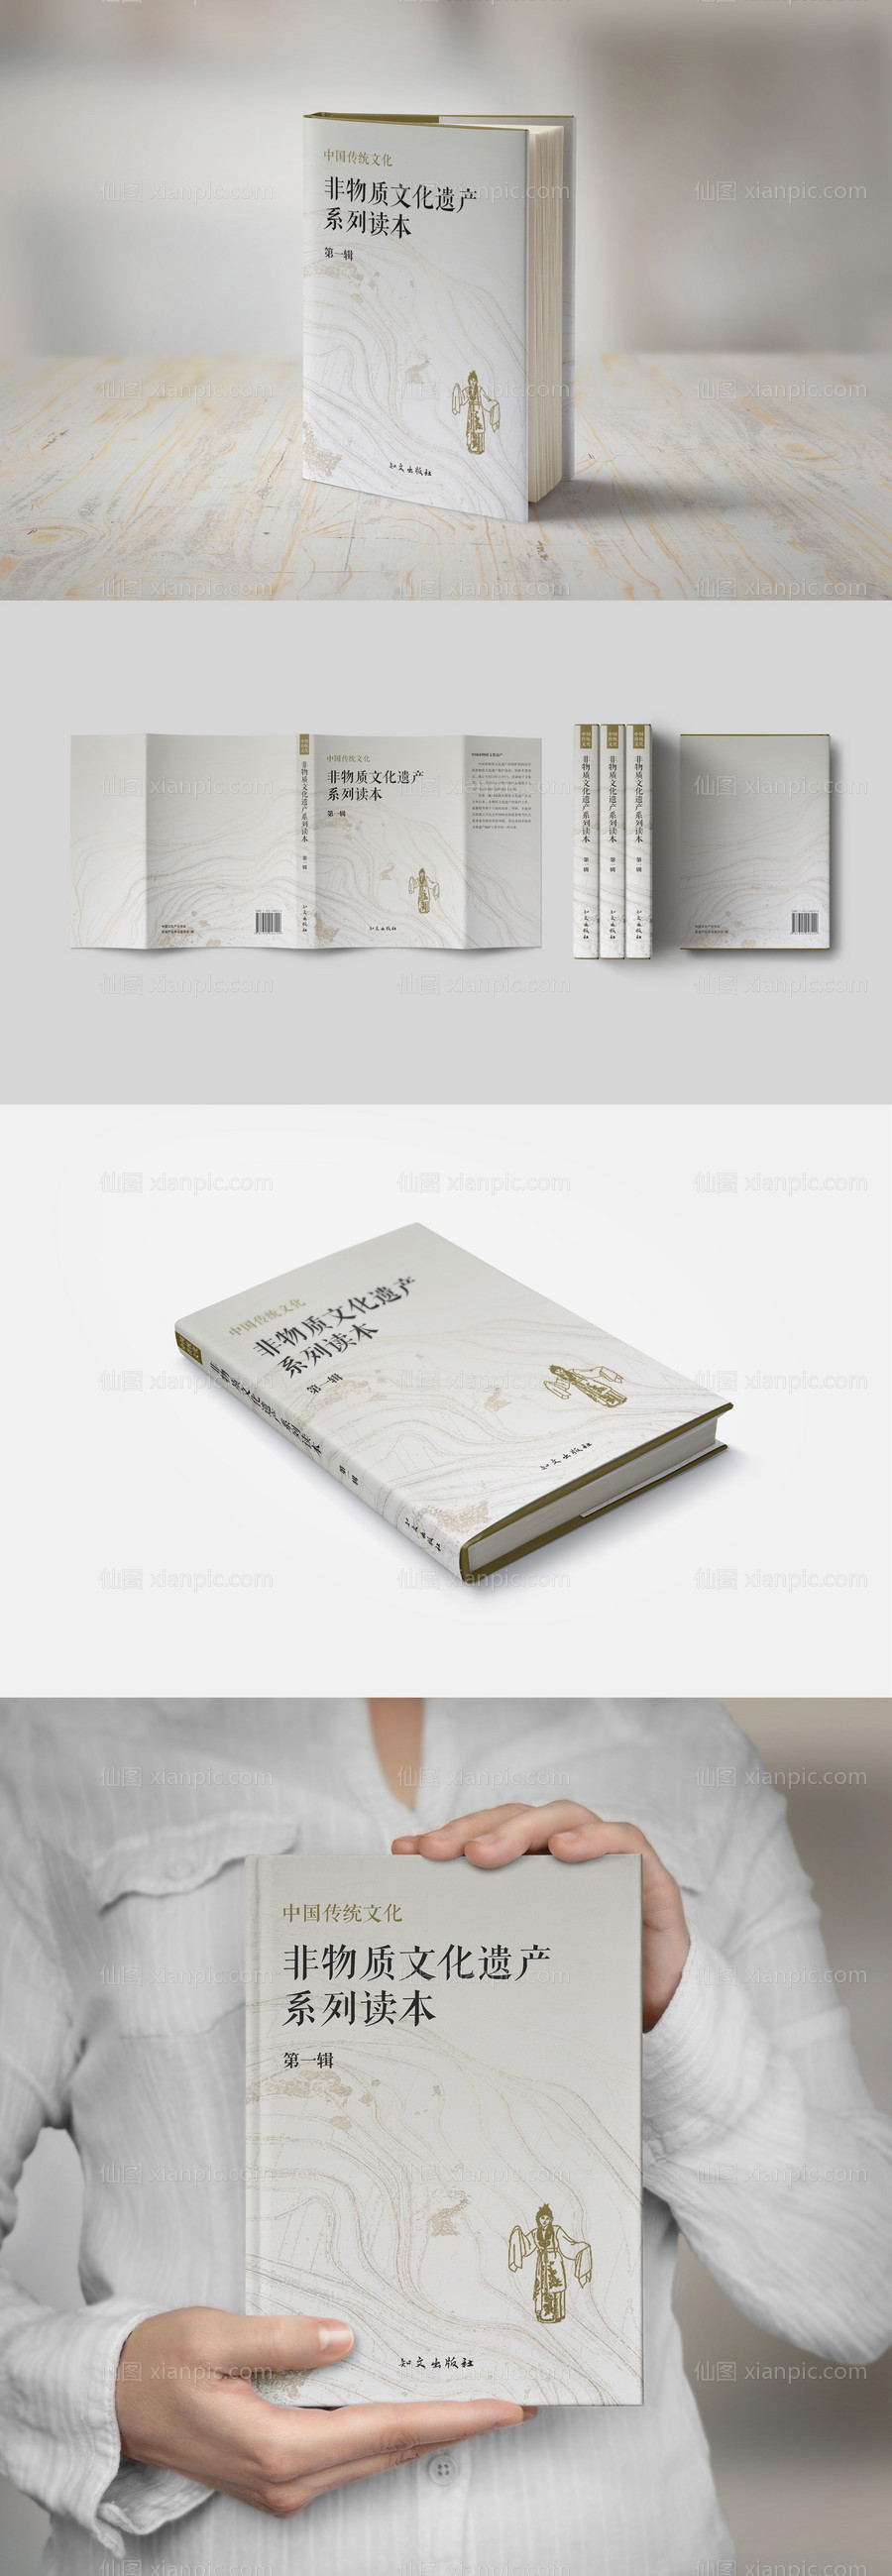 素材乐-中国传统文化非遗读本封面设计